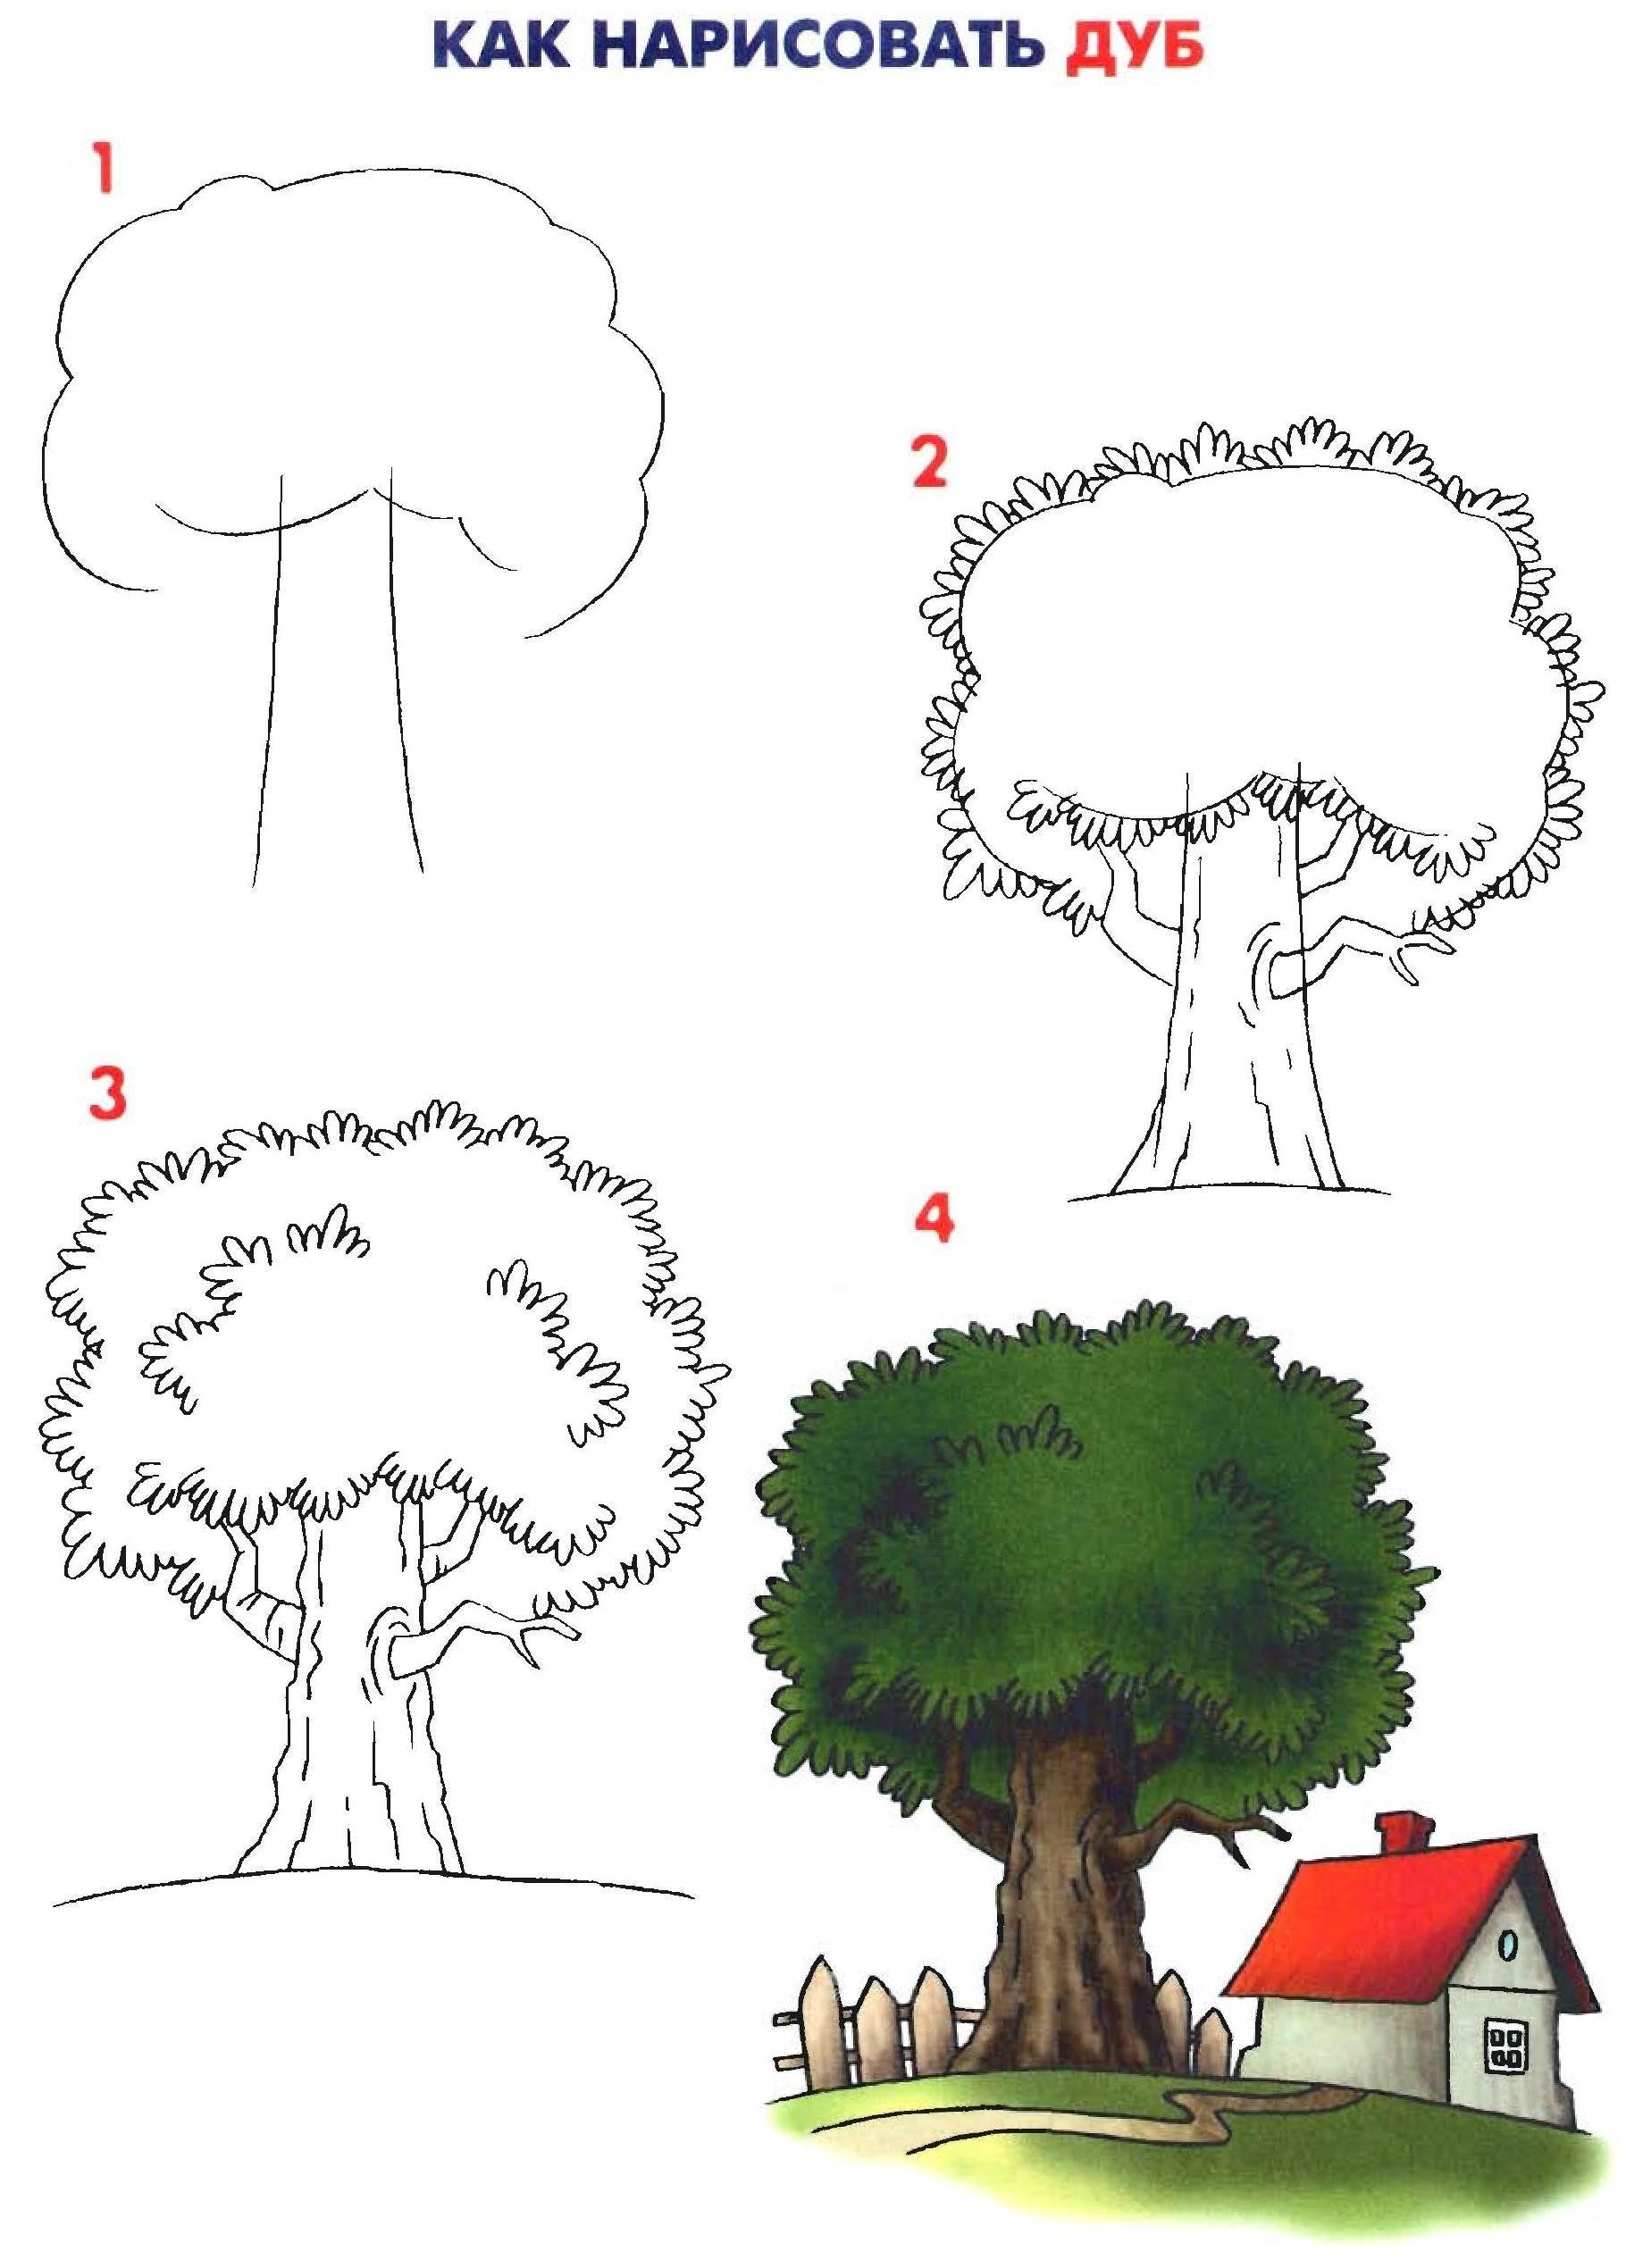 Нарисовать дерево ребенку поэтапно. Поэтапное рисование дерева. Рисование деревьев для дошкольников. Поэтапное рисование дерева для детей. Схема рисования дерева для детей.